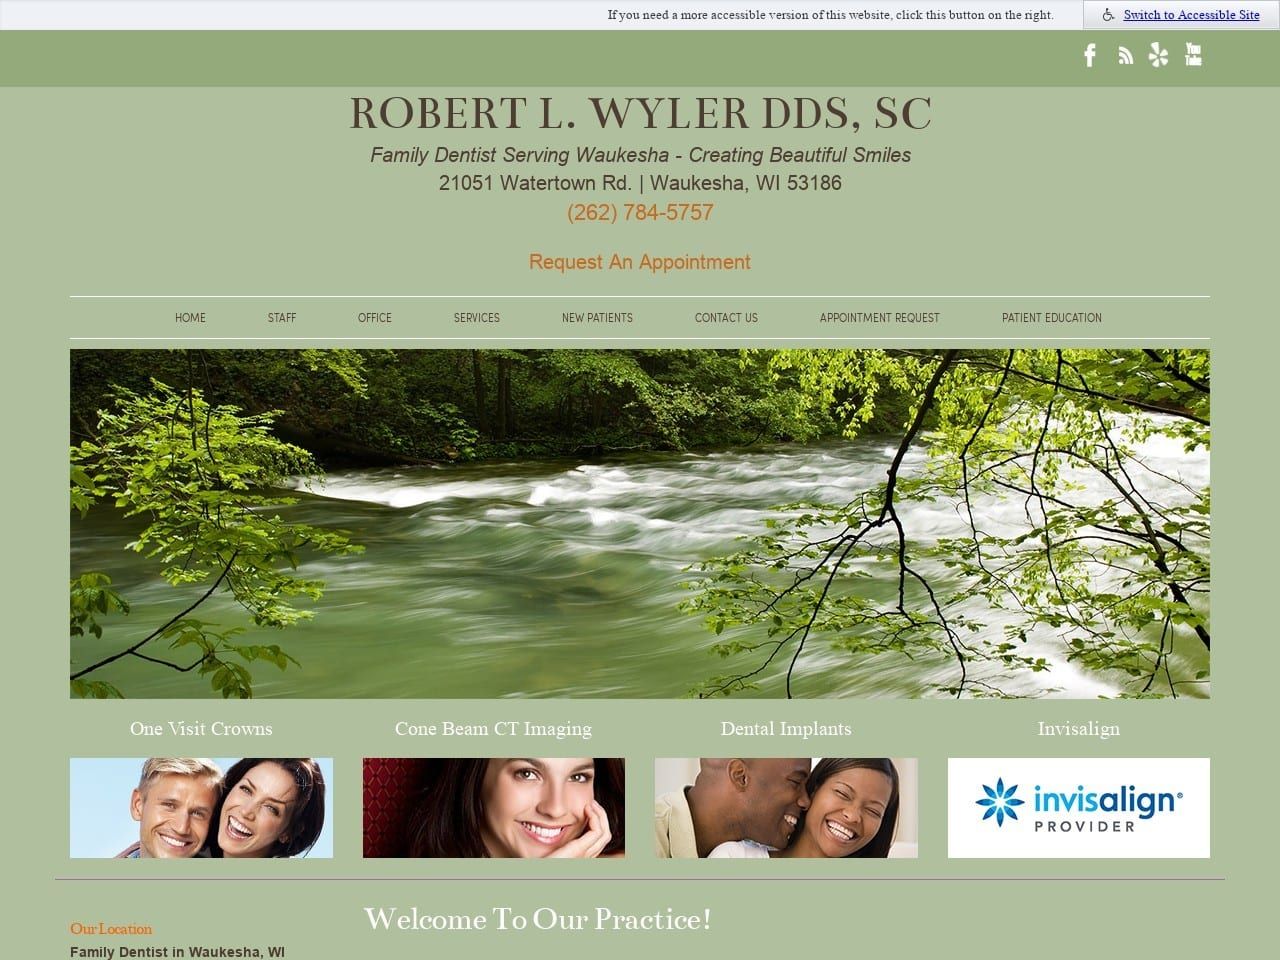 Robert L Wyler DDS SC Website Screenshot from rwylerdds.com